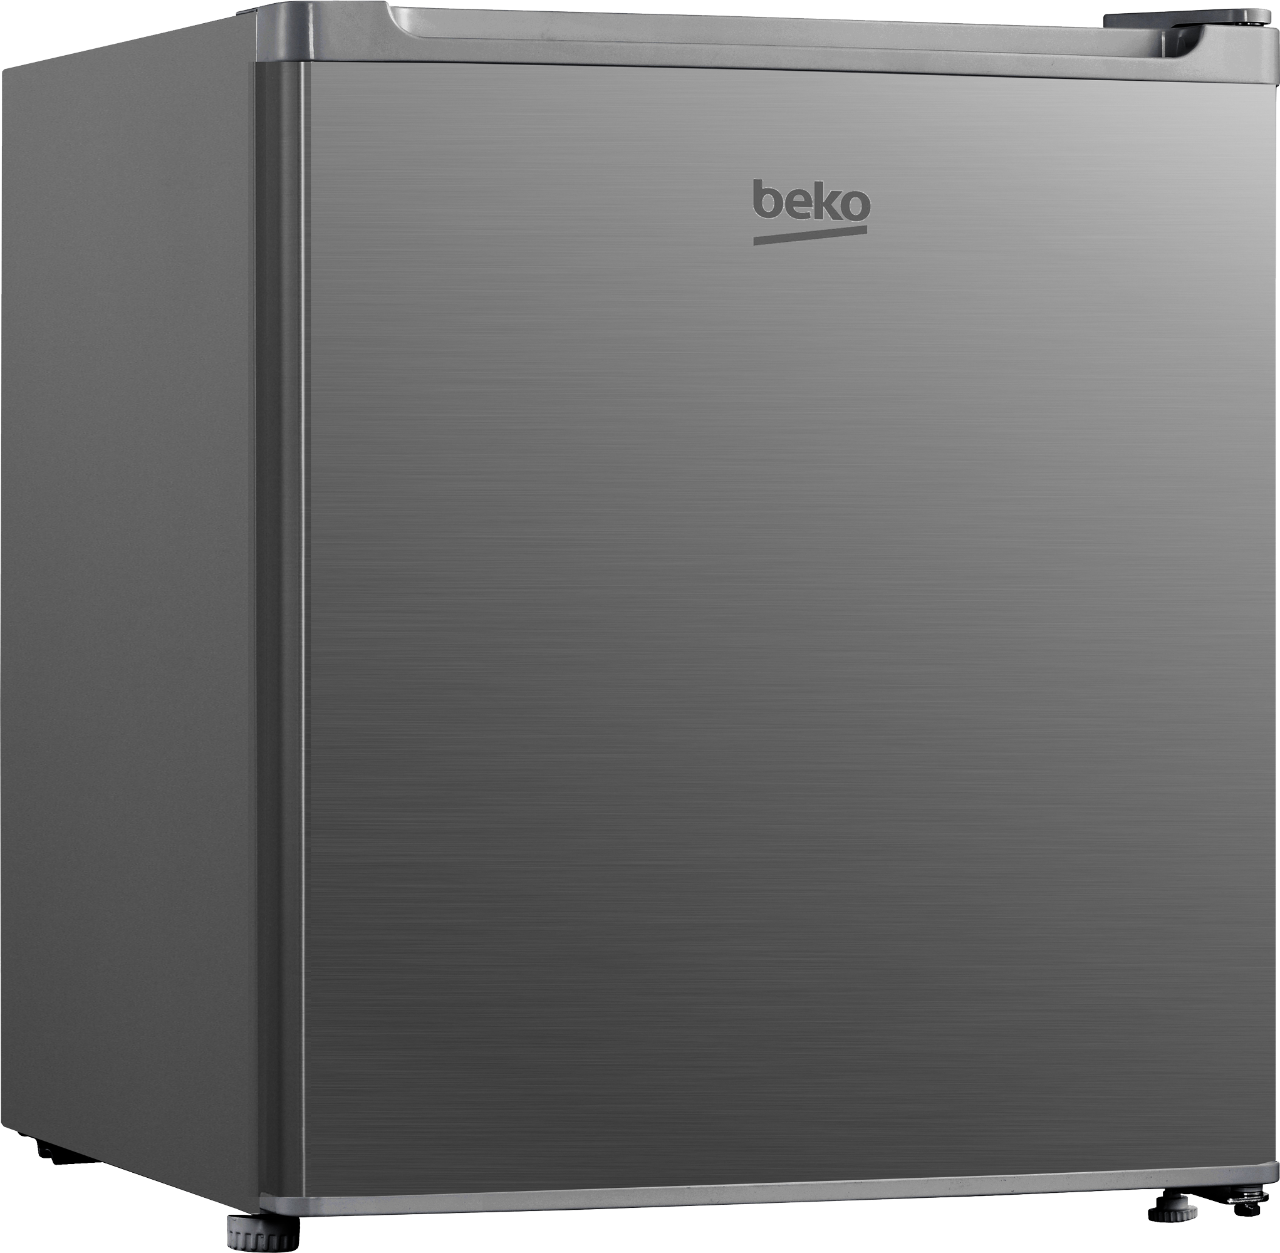 ตู้เย็นมินิบาร์ BEKO รุ่น RS4020P